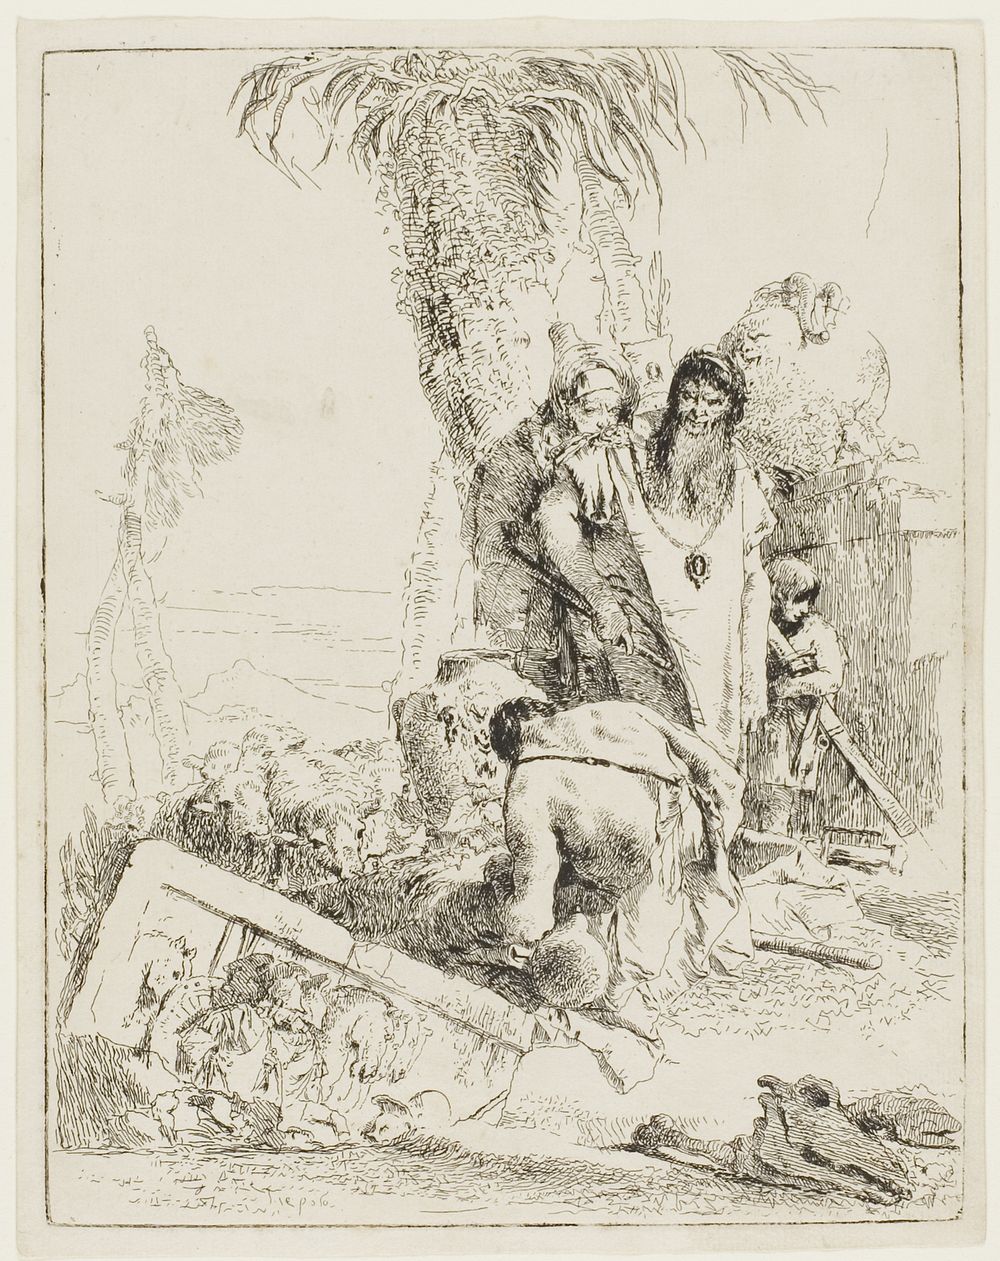 A Shepherd with Two Magicians, from Scherzi by Giambattista Tiepolo